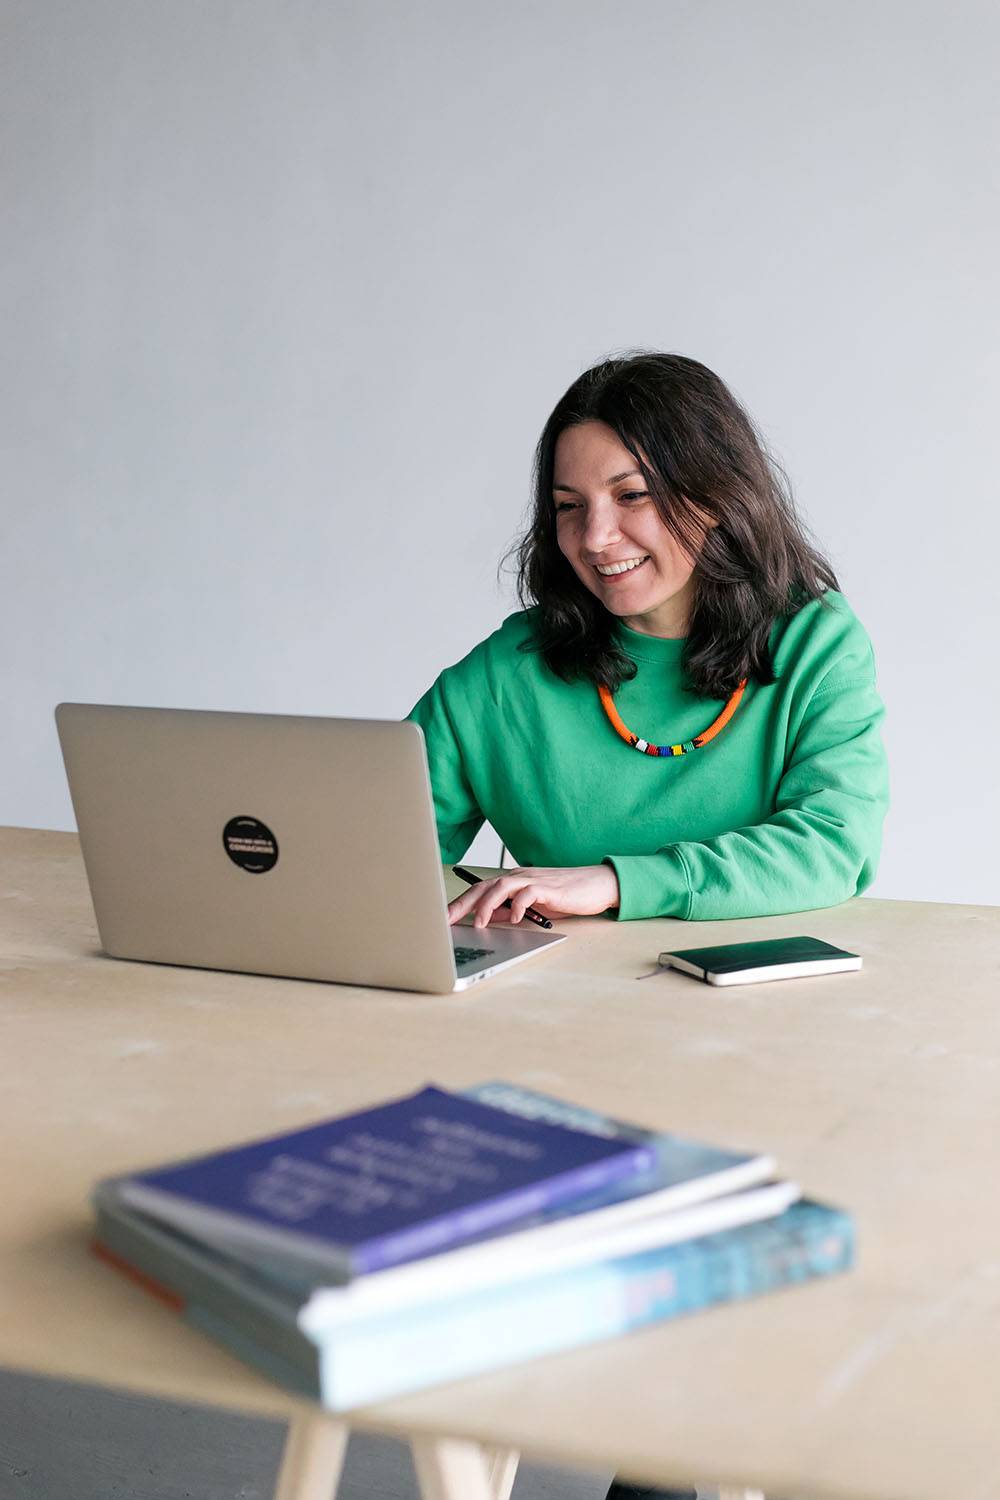 Anna Kokalanova sitting on a table and working on a computer.